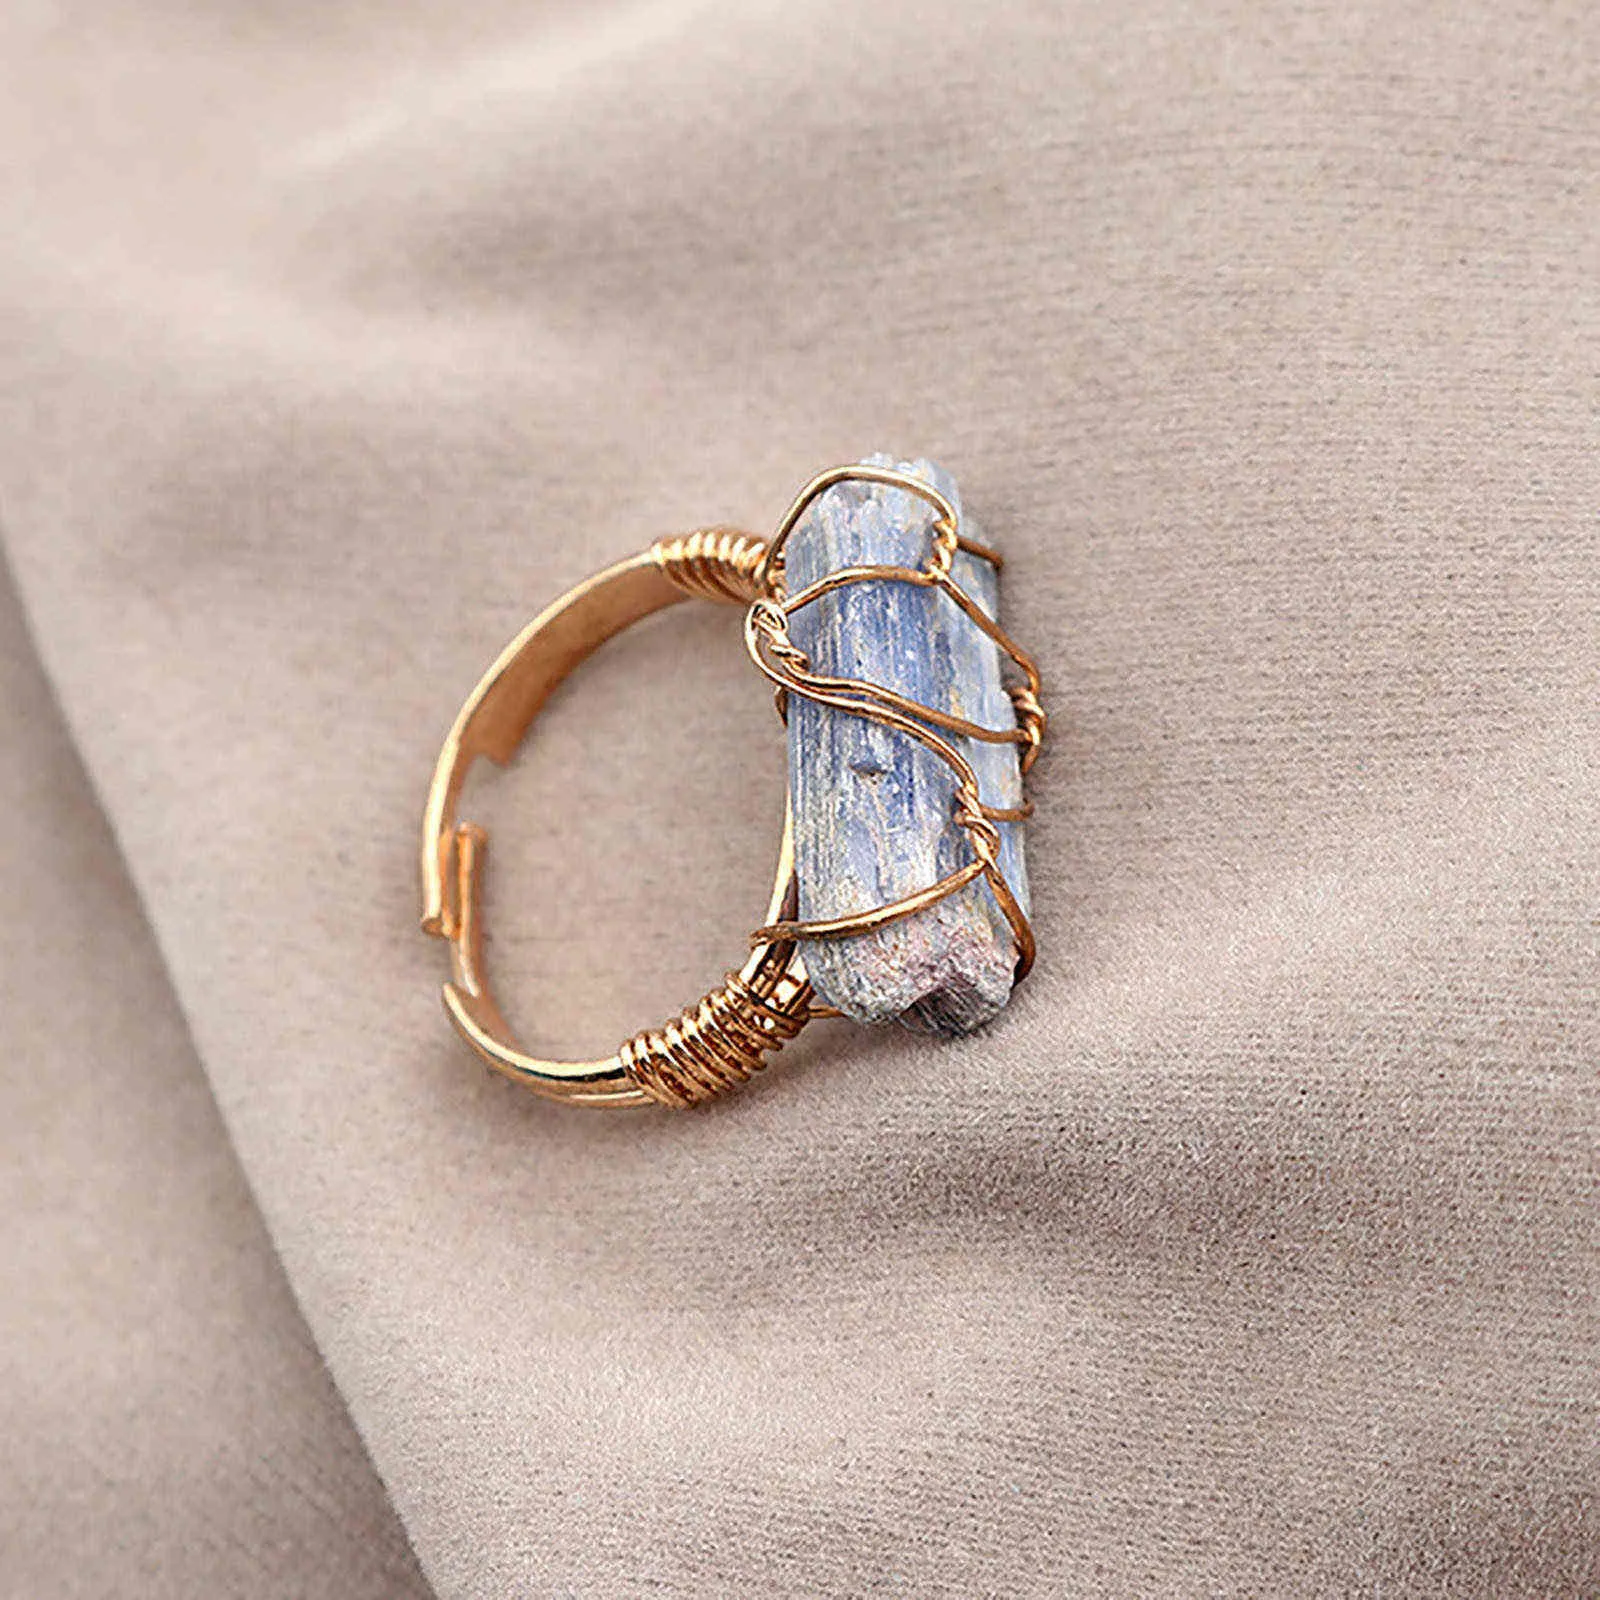 Rings de pedra natural anéis de ouro cor de ouro envoltório irregular amethysts quartzs de dedo ajustável anel de dedo jóias para mulheres presentes G1125